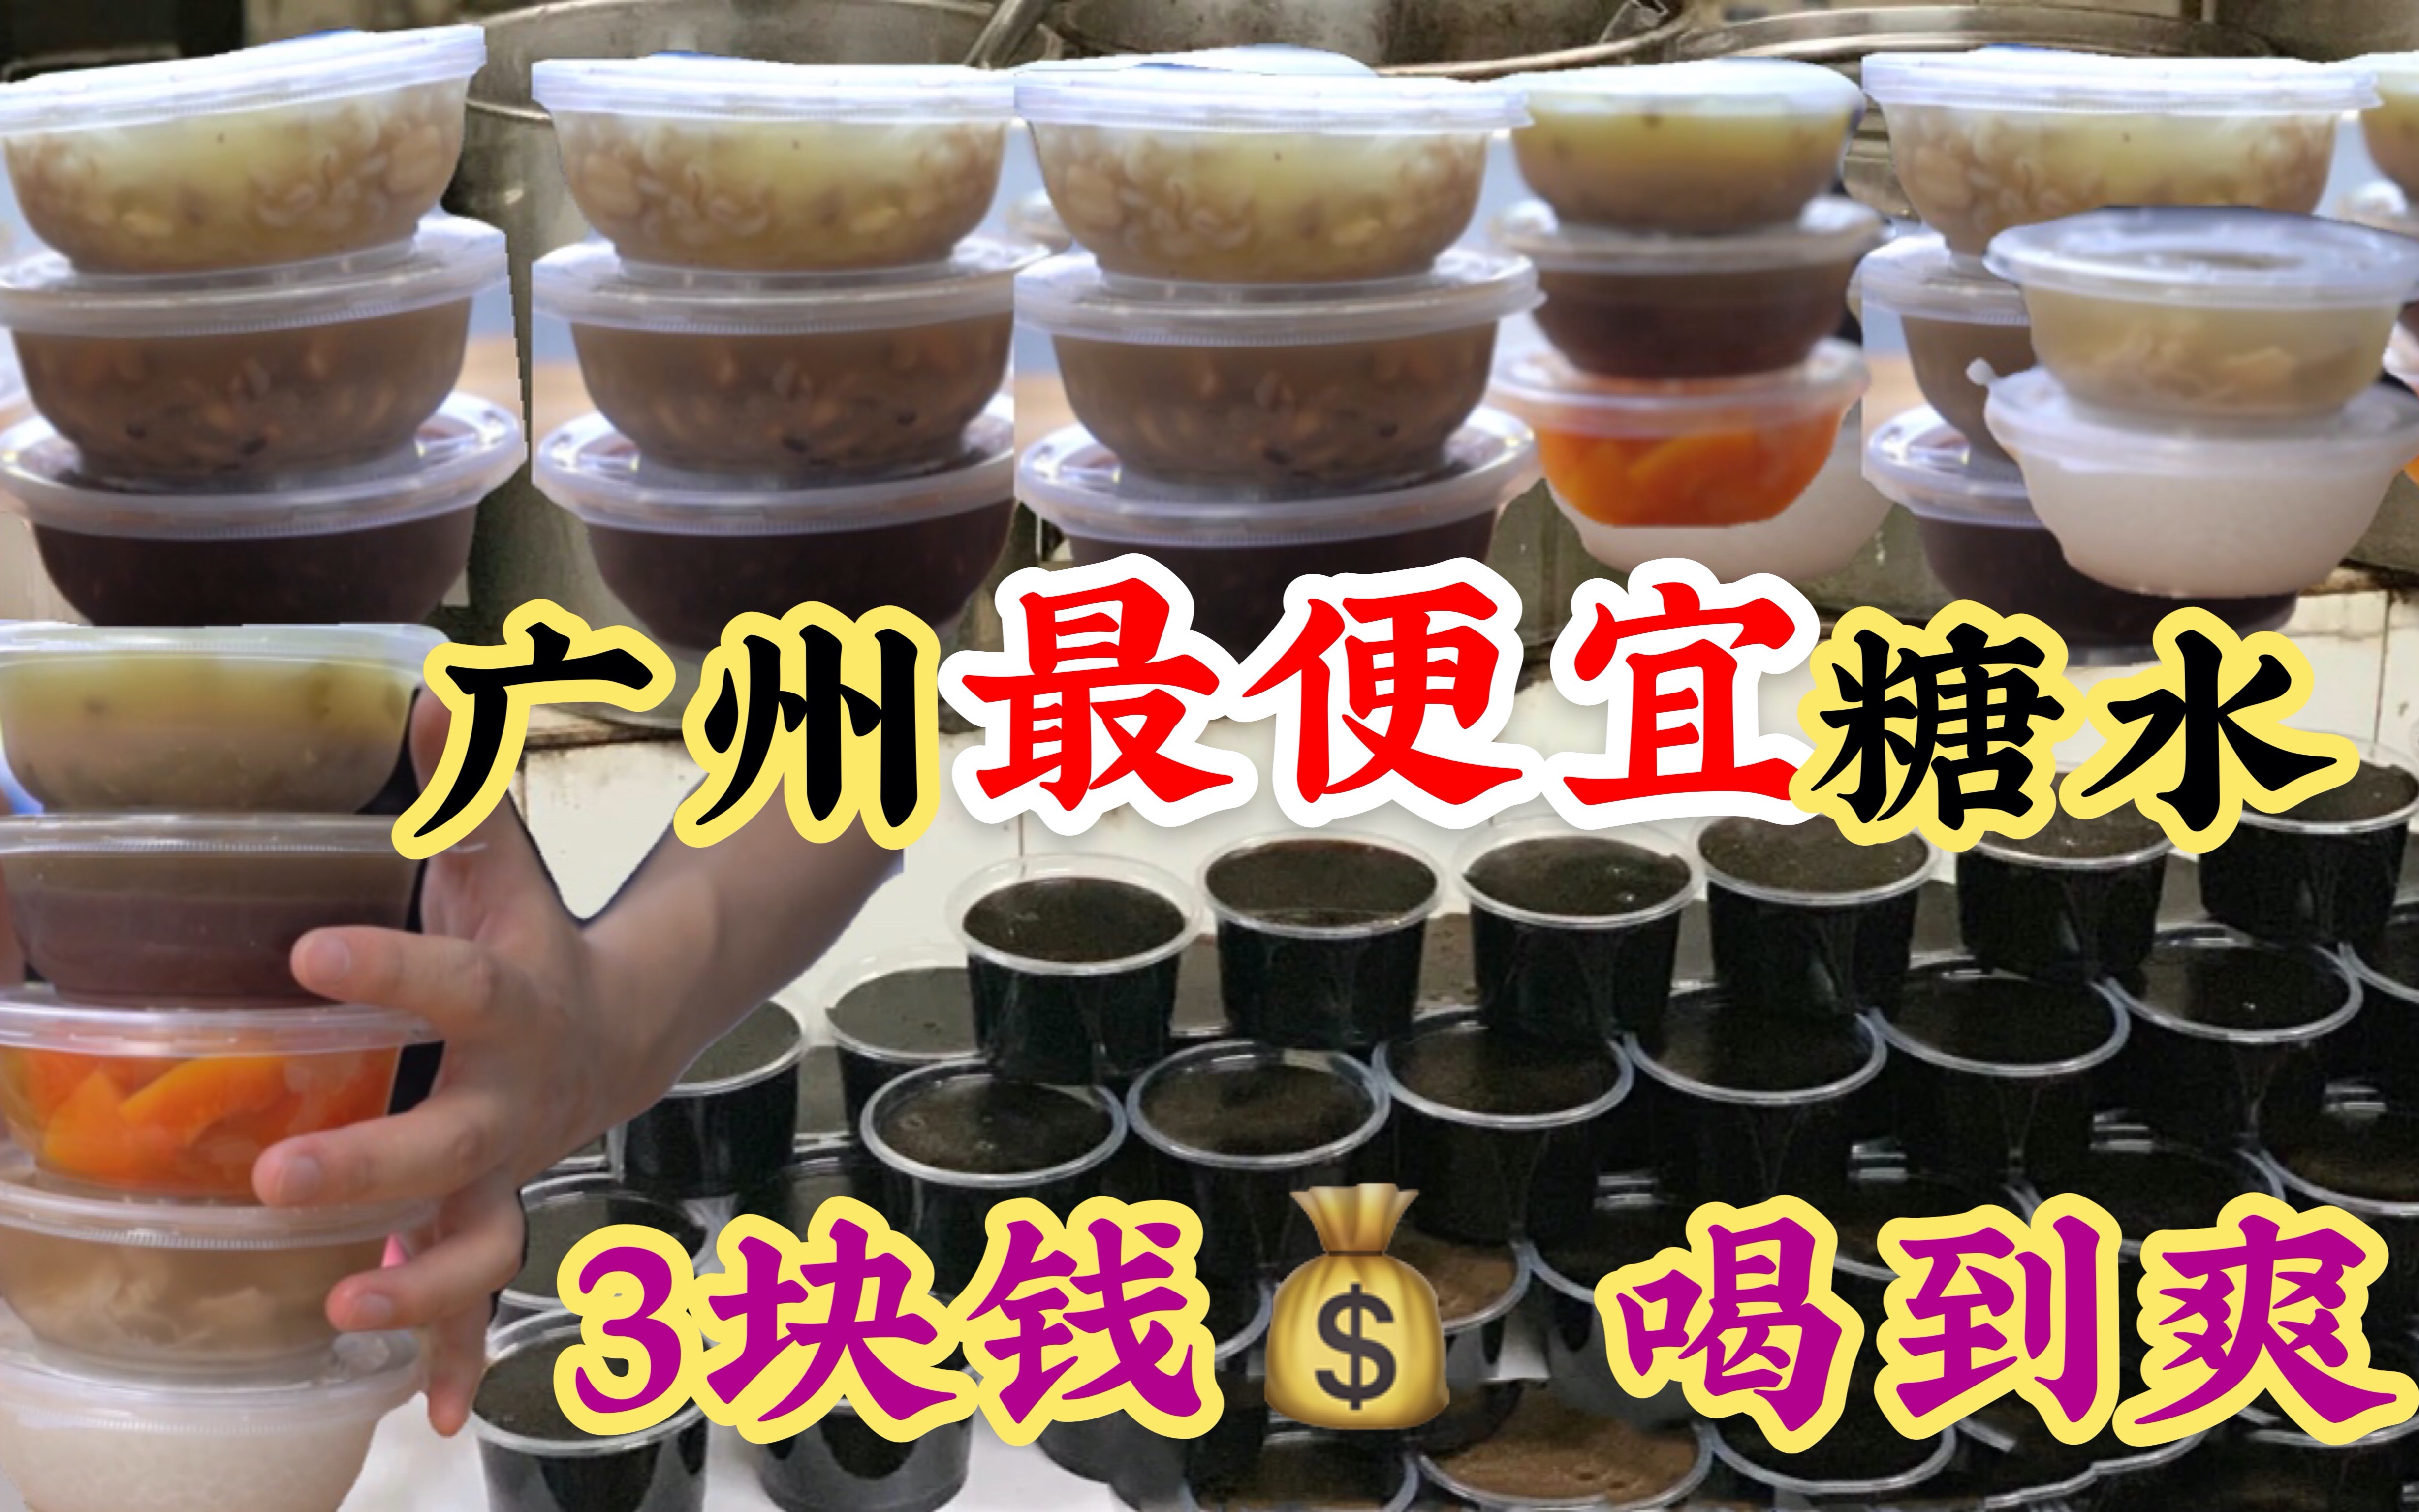 广州最便宜的糖水，全部3元，老板怎么赚钱？